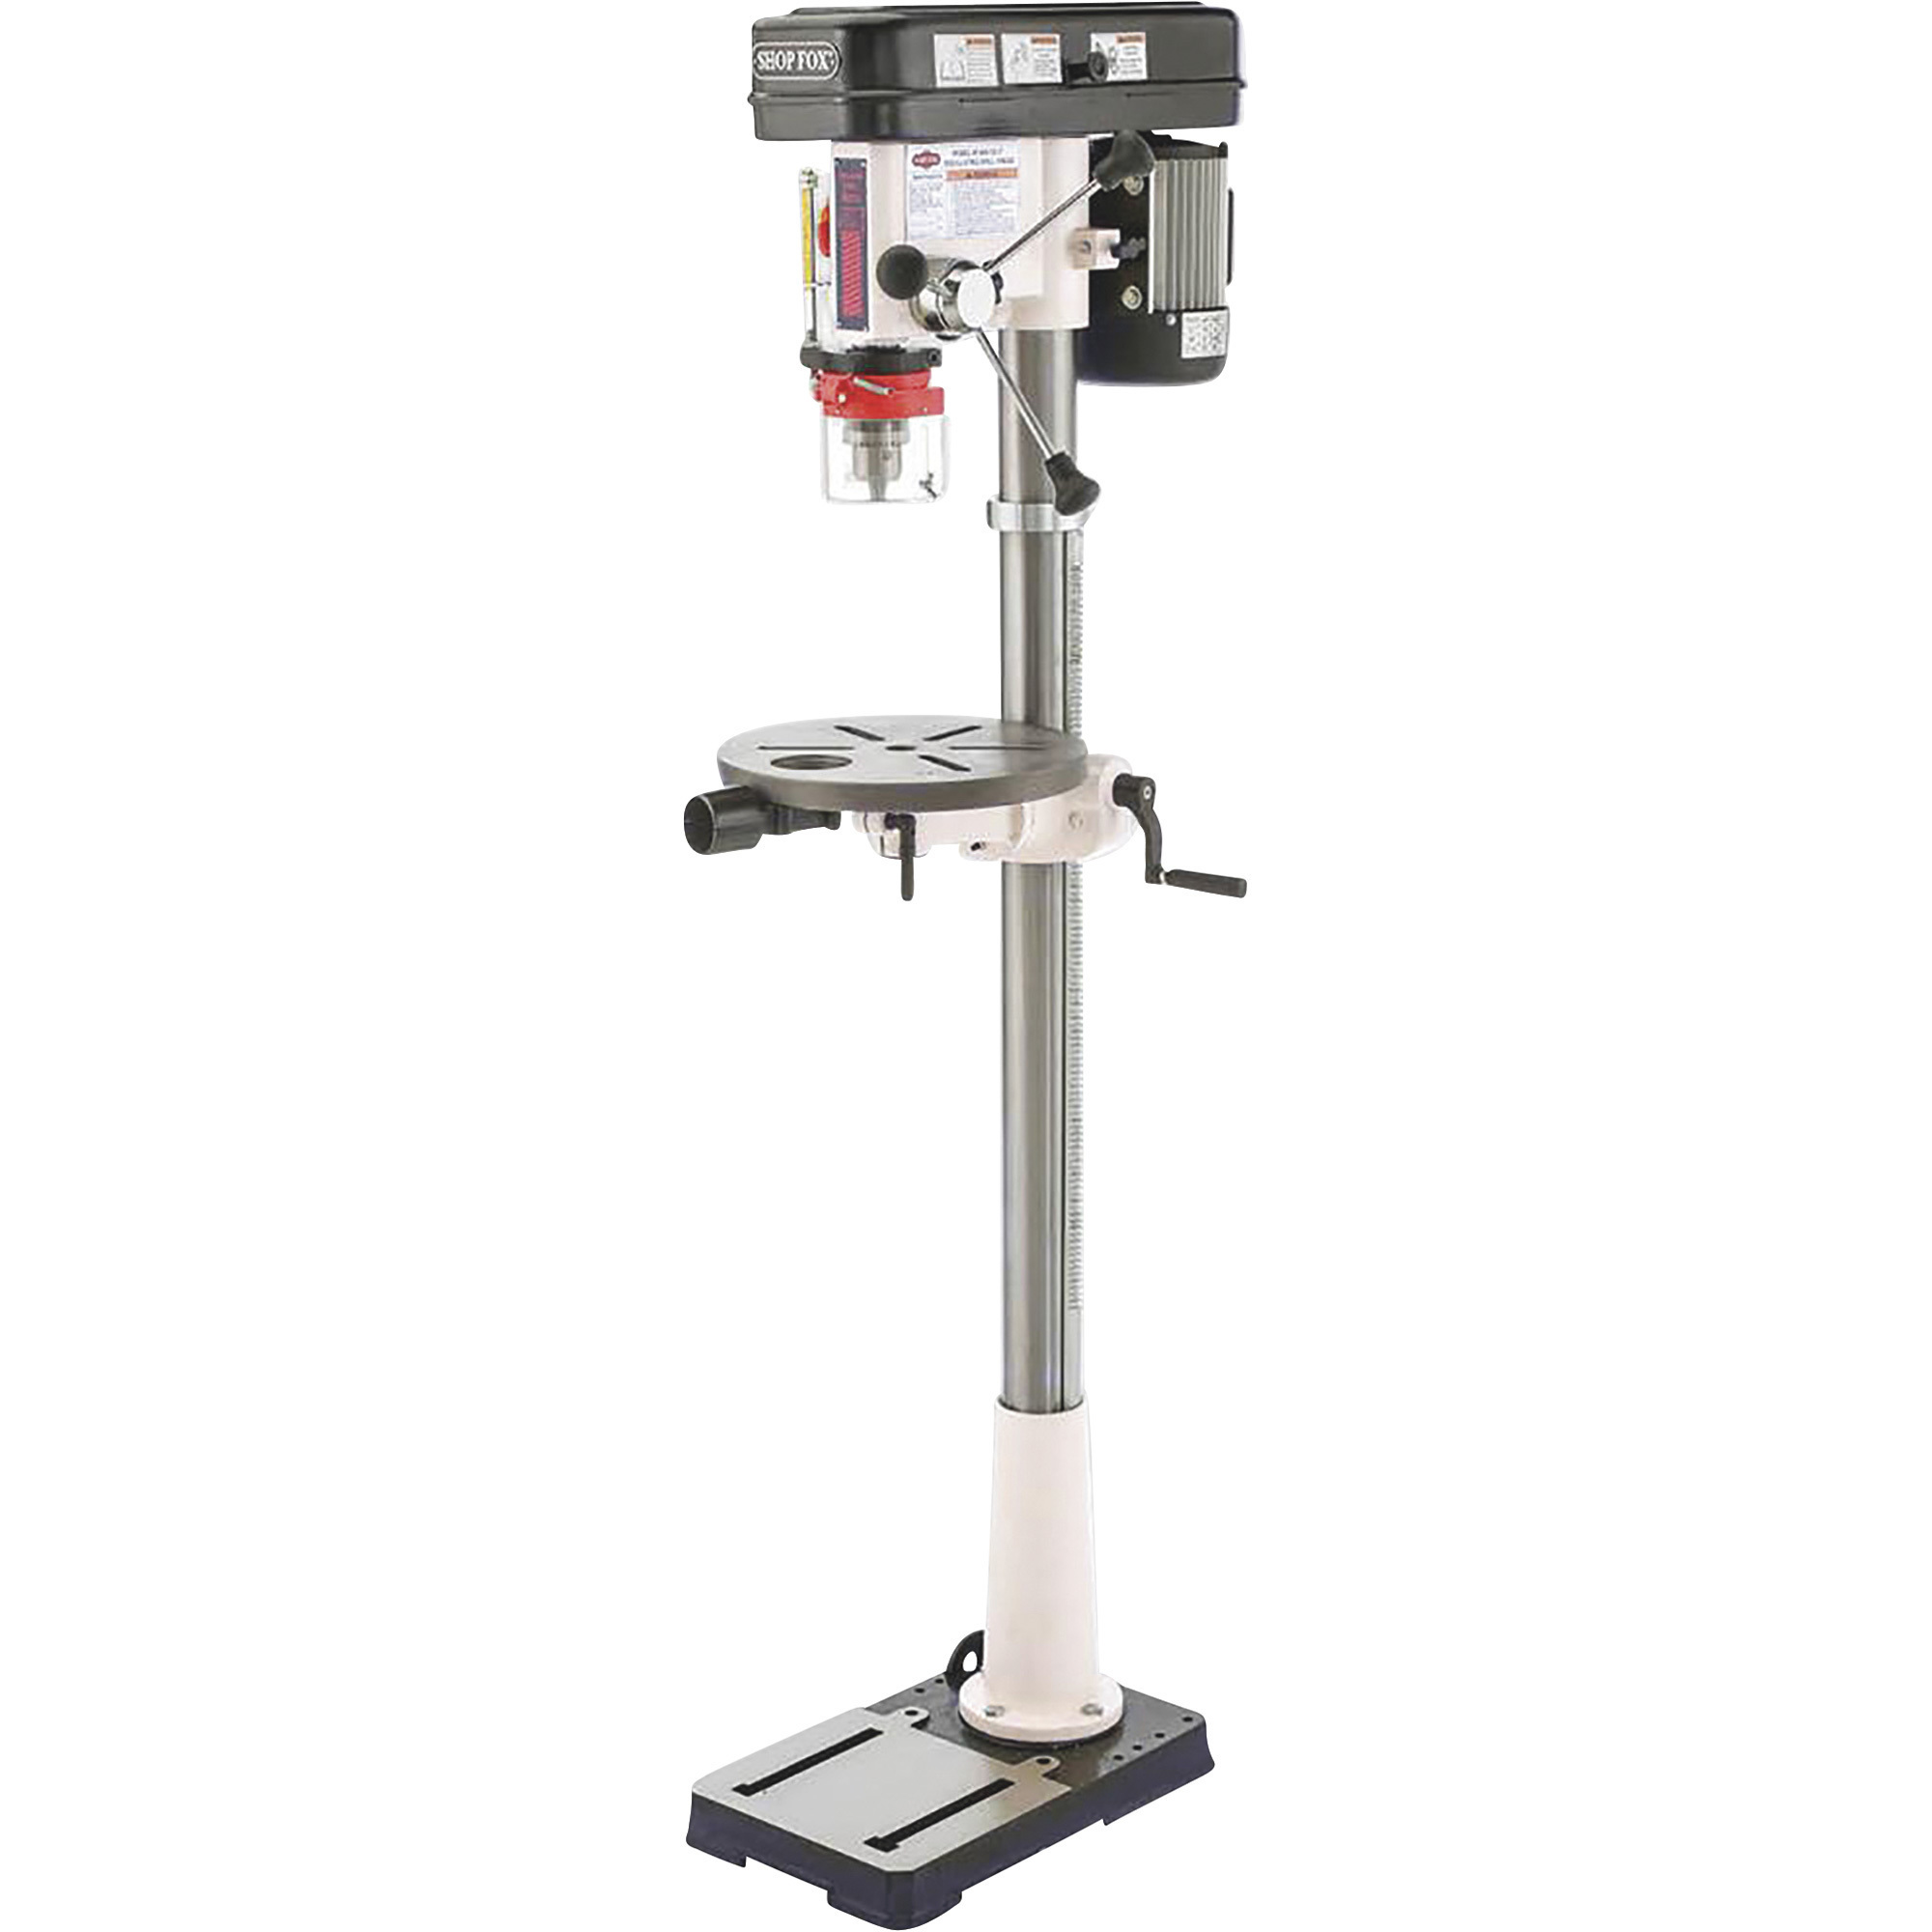 SHOP FOX Oscillating Floor Standing Drill Press, 13 1/4Inch, 3/4 HP, 110V, Model W1848